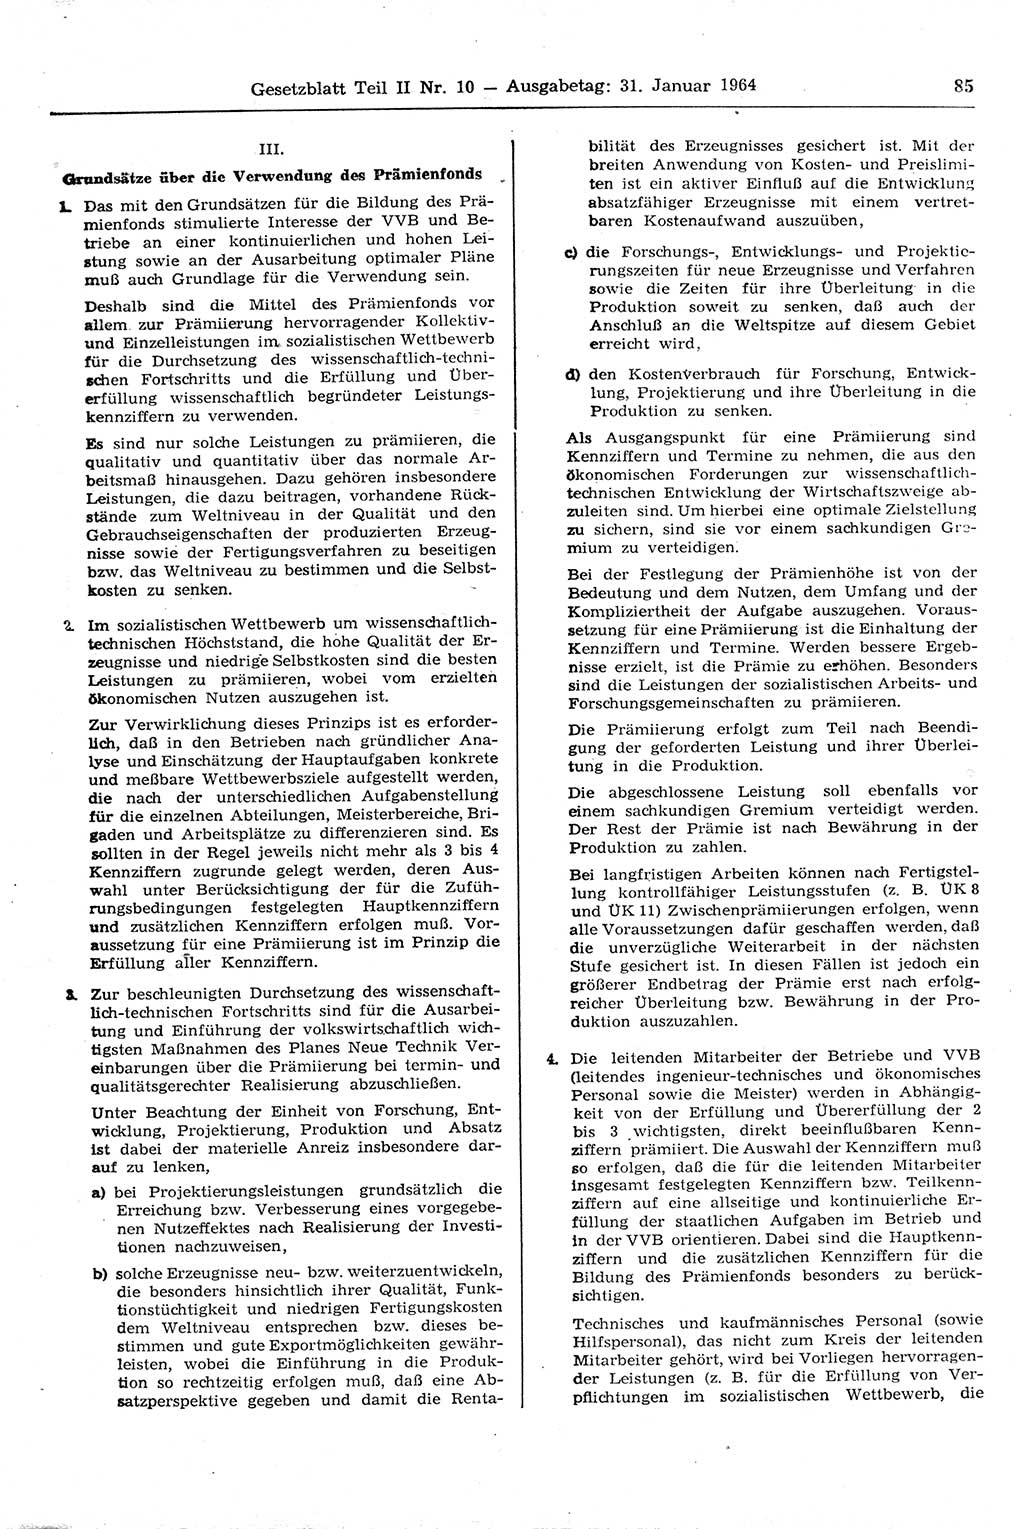 Gesetzblatt (GBl.) der Deutschen Demokratischen Republik (DDR) Teil ⅠⅠ 1964, Seite 85 (GBl. DDR ⅠⅠ 1964, S. 85)